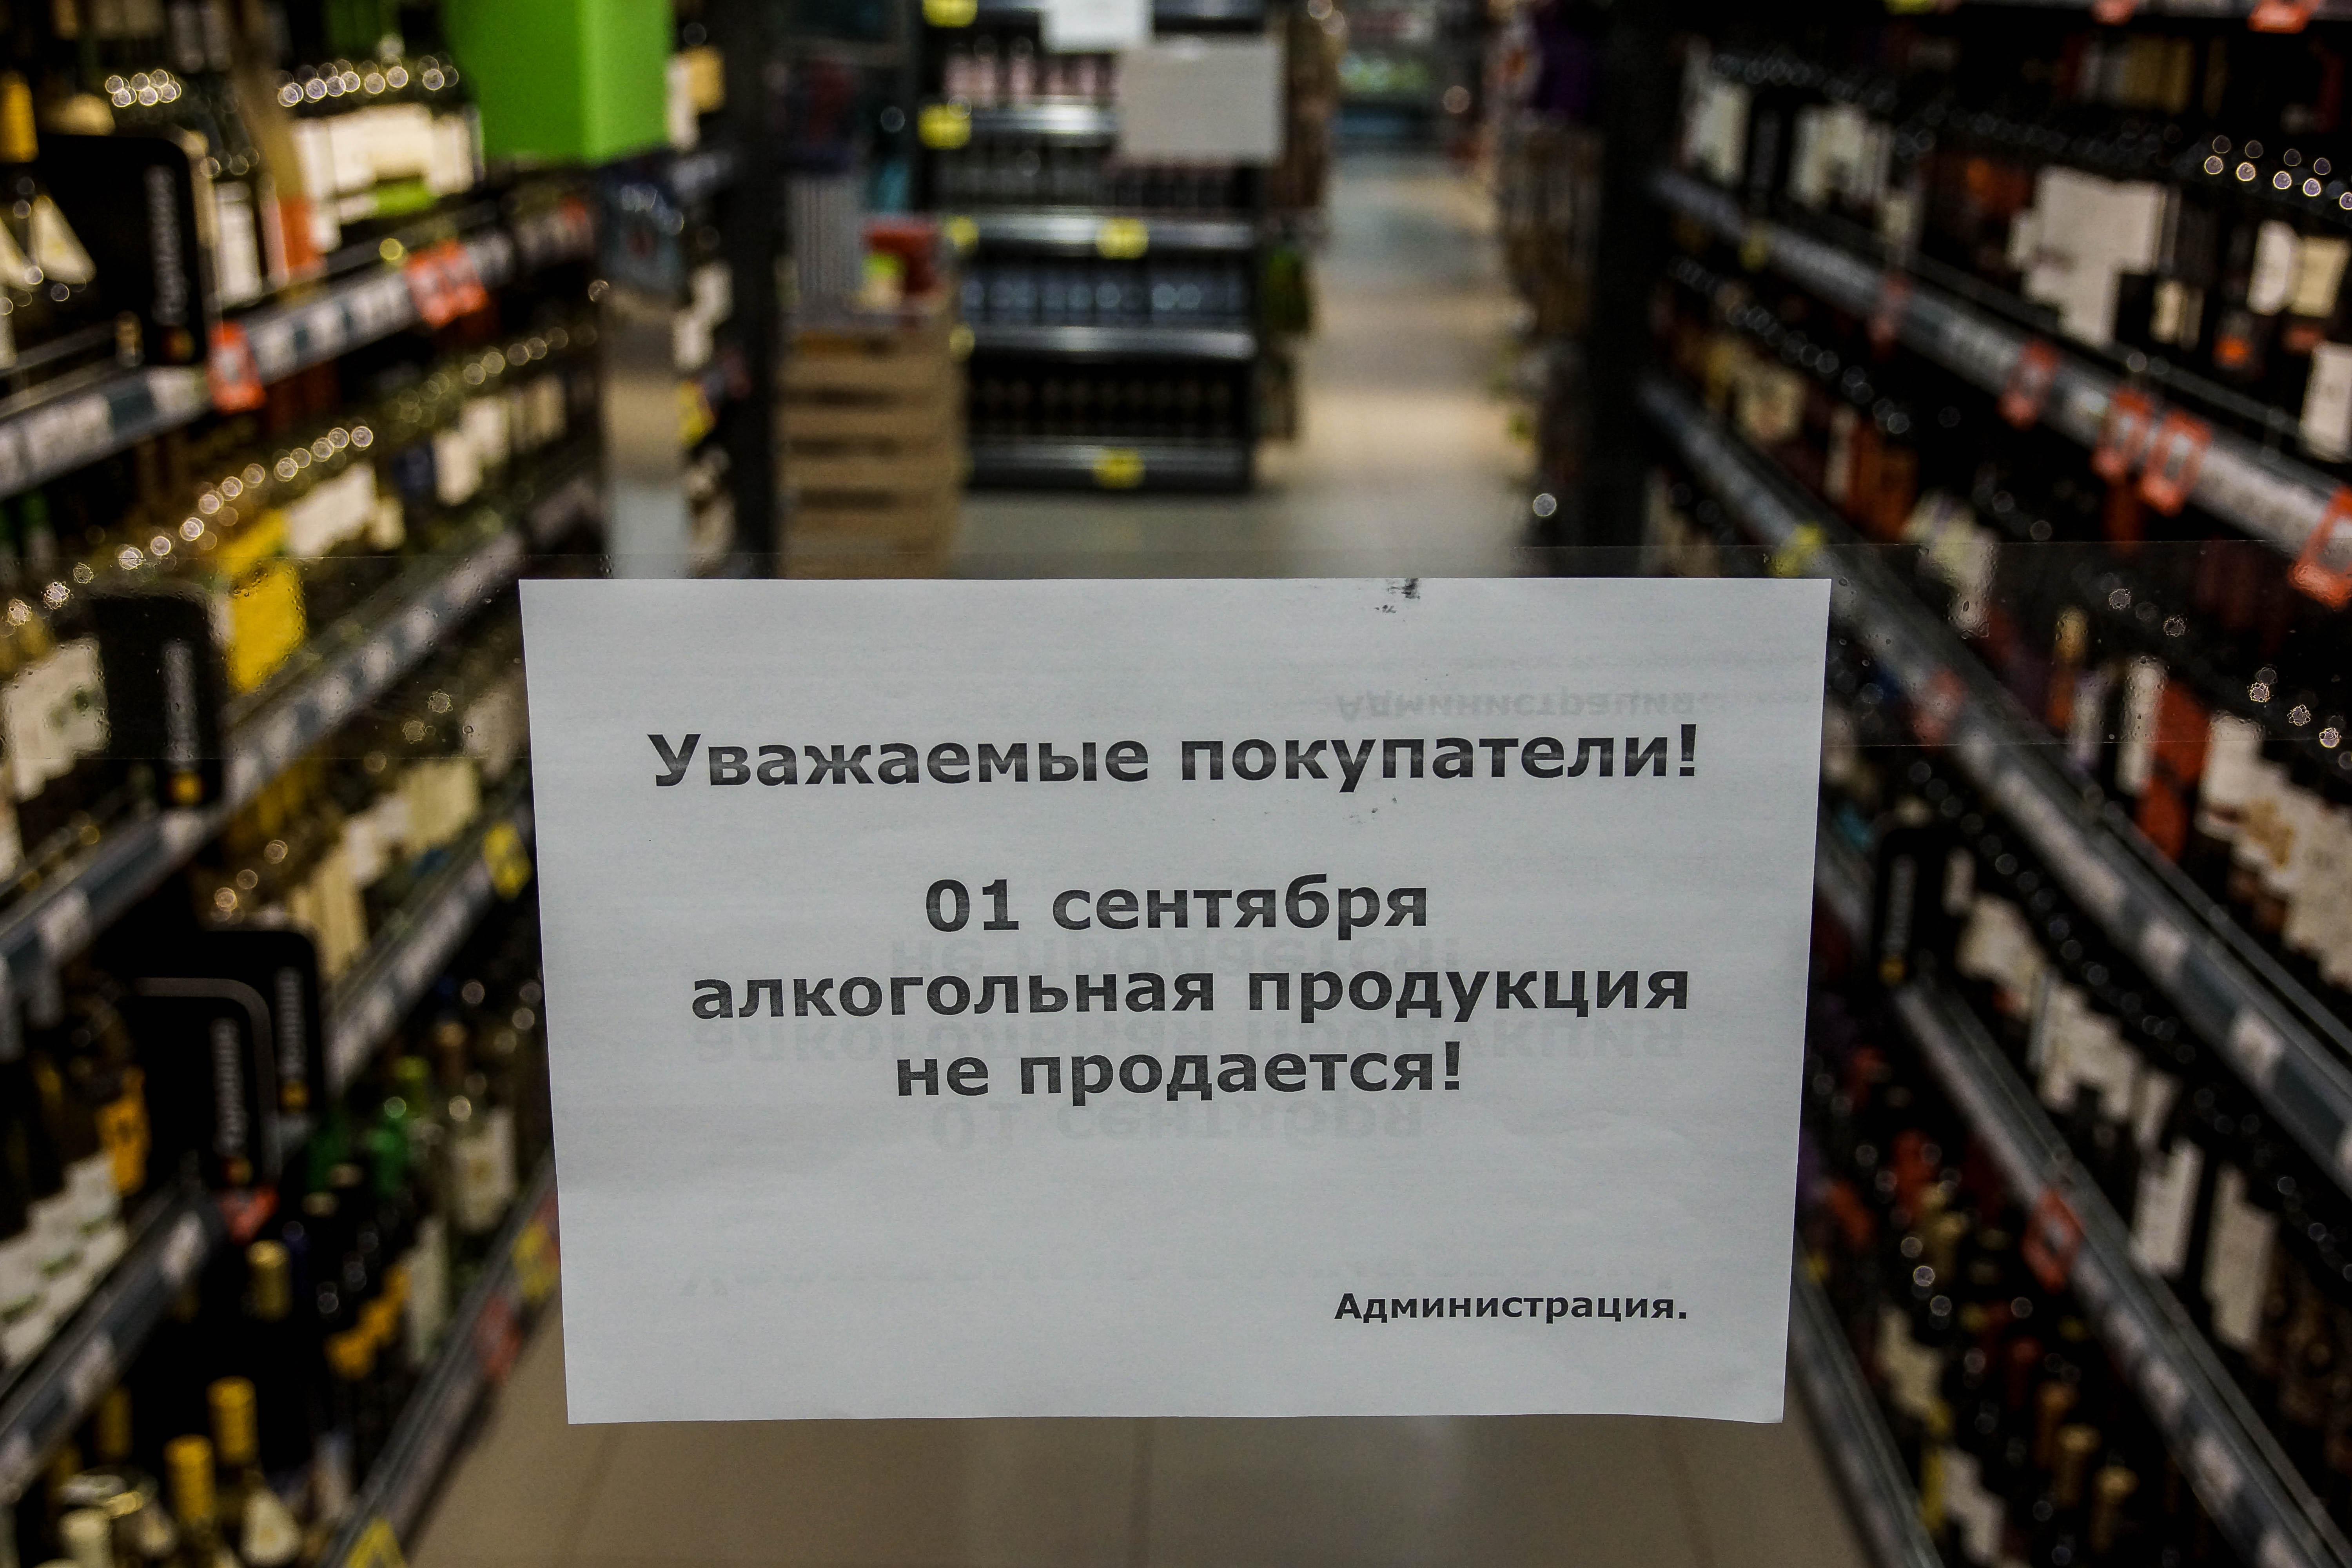 Реализация запрещена ограничена. Торговля алкогольной продукцией. Запрет алкогольной продукции. Алкогольная продукция не продается.